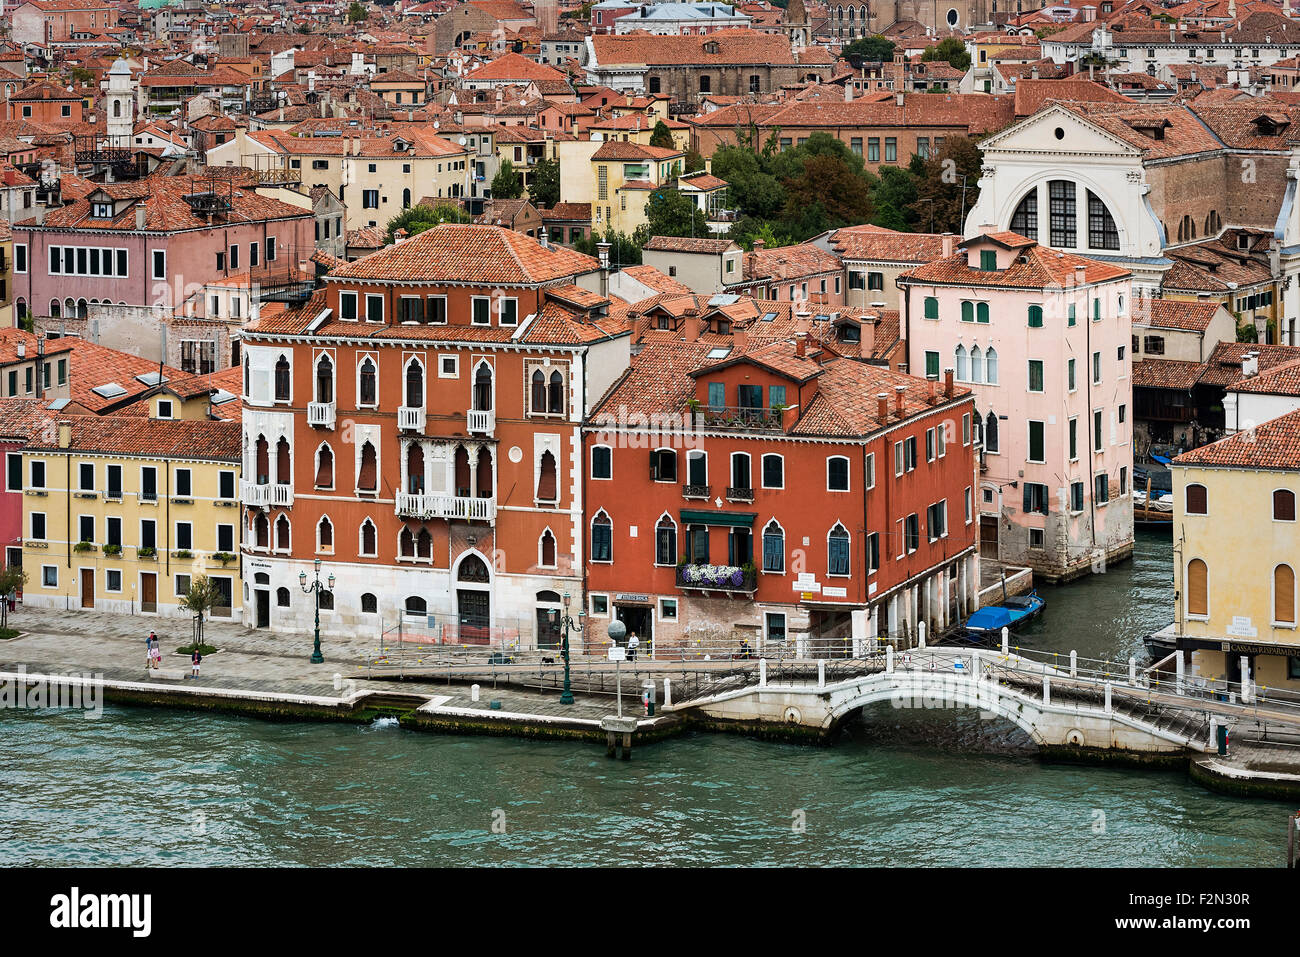 Affascinante architettura tradizionale e tetti in terracotta nella città di Venezia, Italia Foto Stock